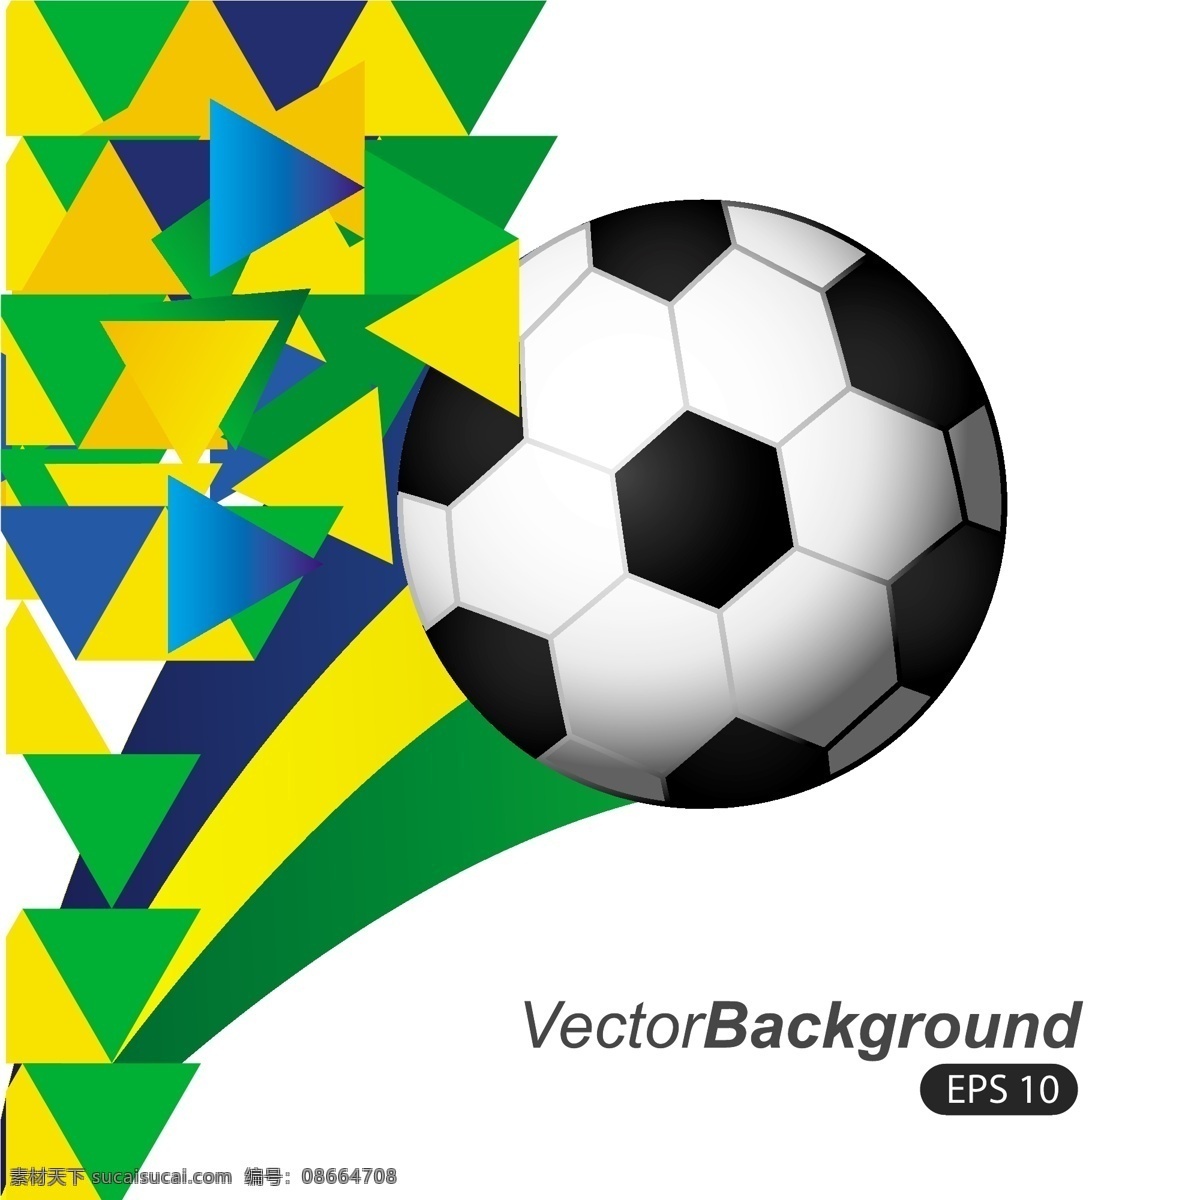 足球 世界杯 海报 模板下载 三角形 巴西 足球赛事 足球比赛 体育运动 生活百科 矢量素材 白色